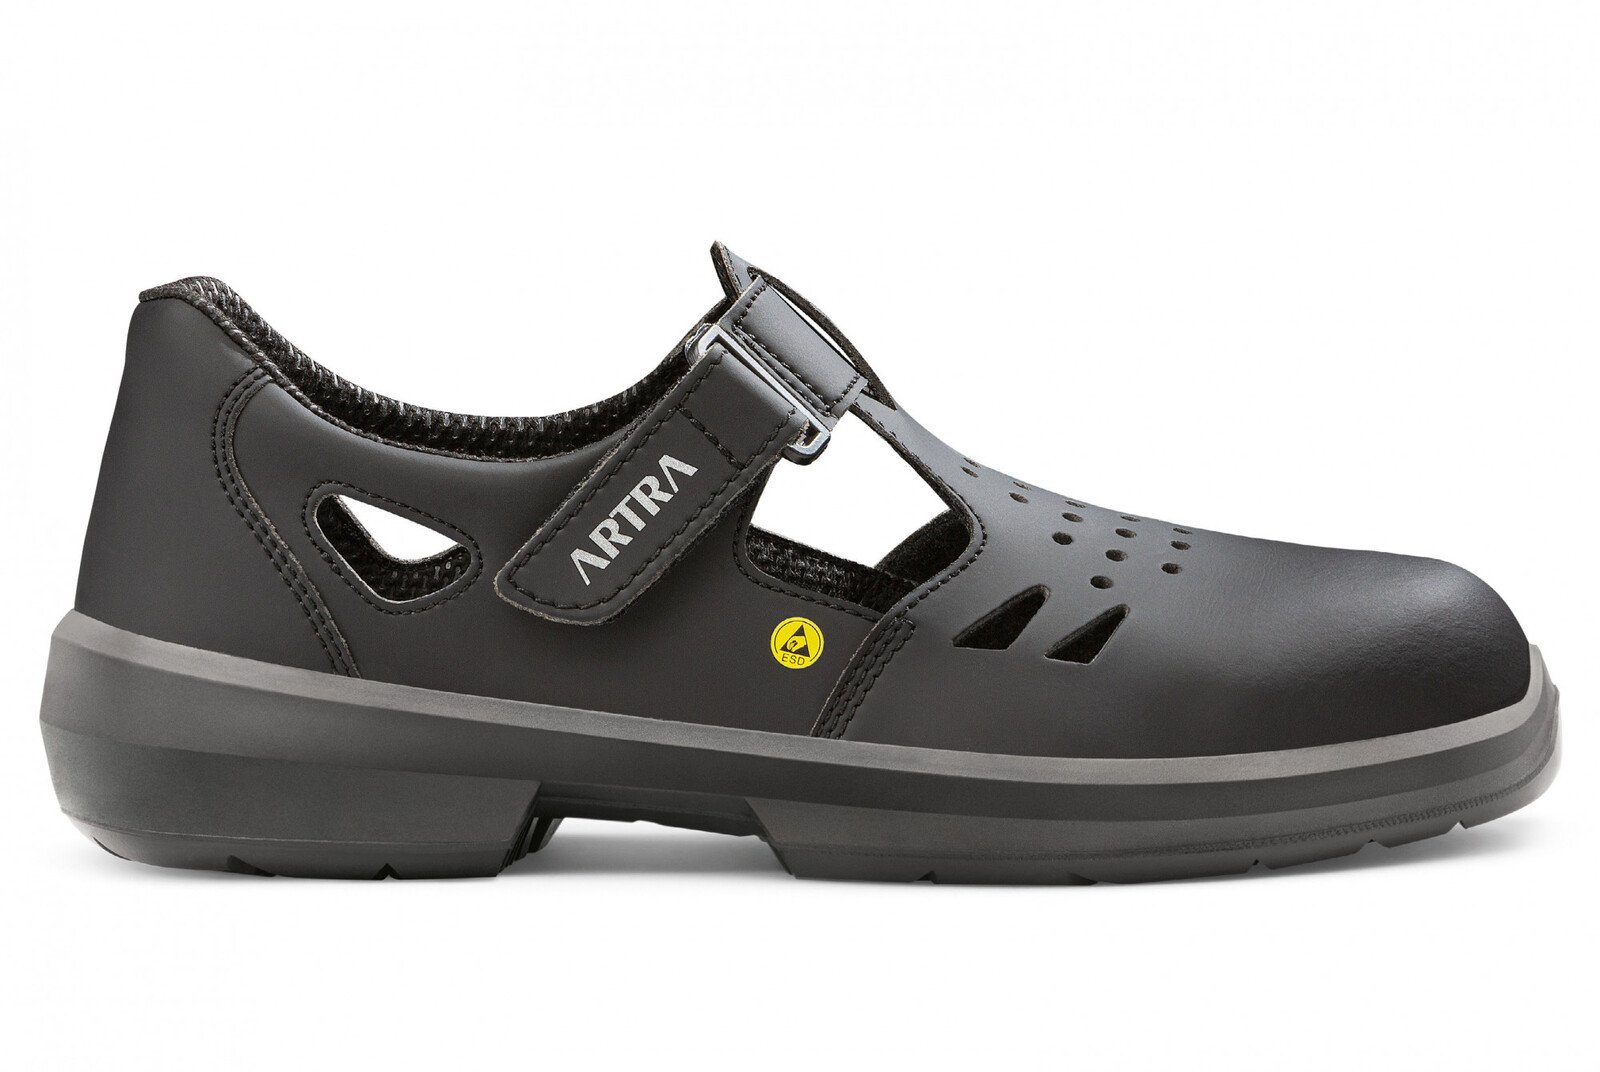 Bezpečnostné sandále Artra Armen 9008 6760 S1P SRC ESD MF - veľkosť: 43, farba: čierna